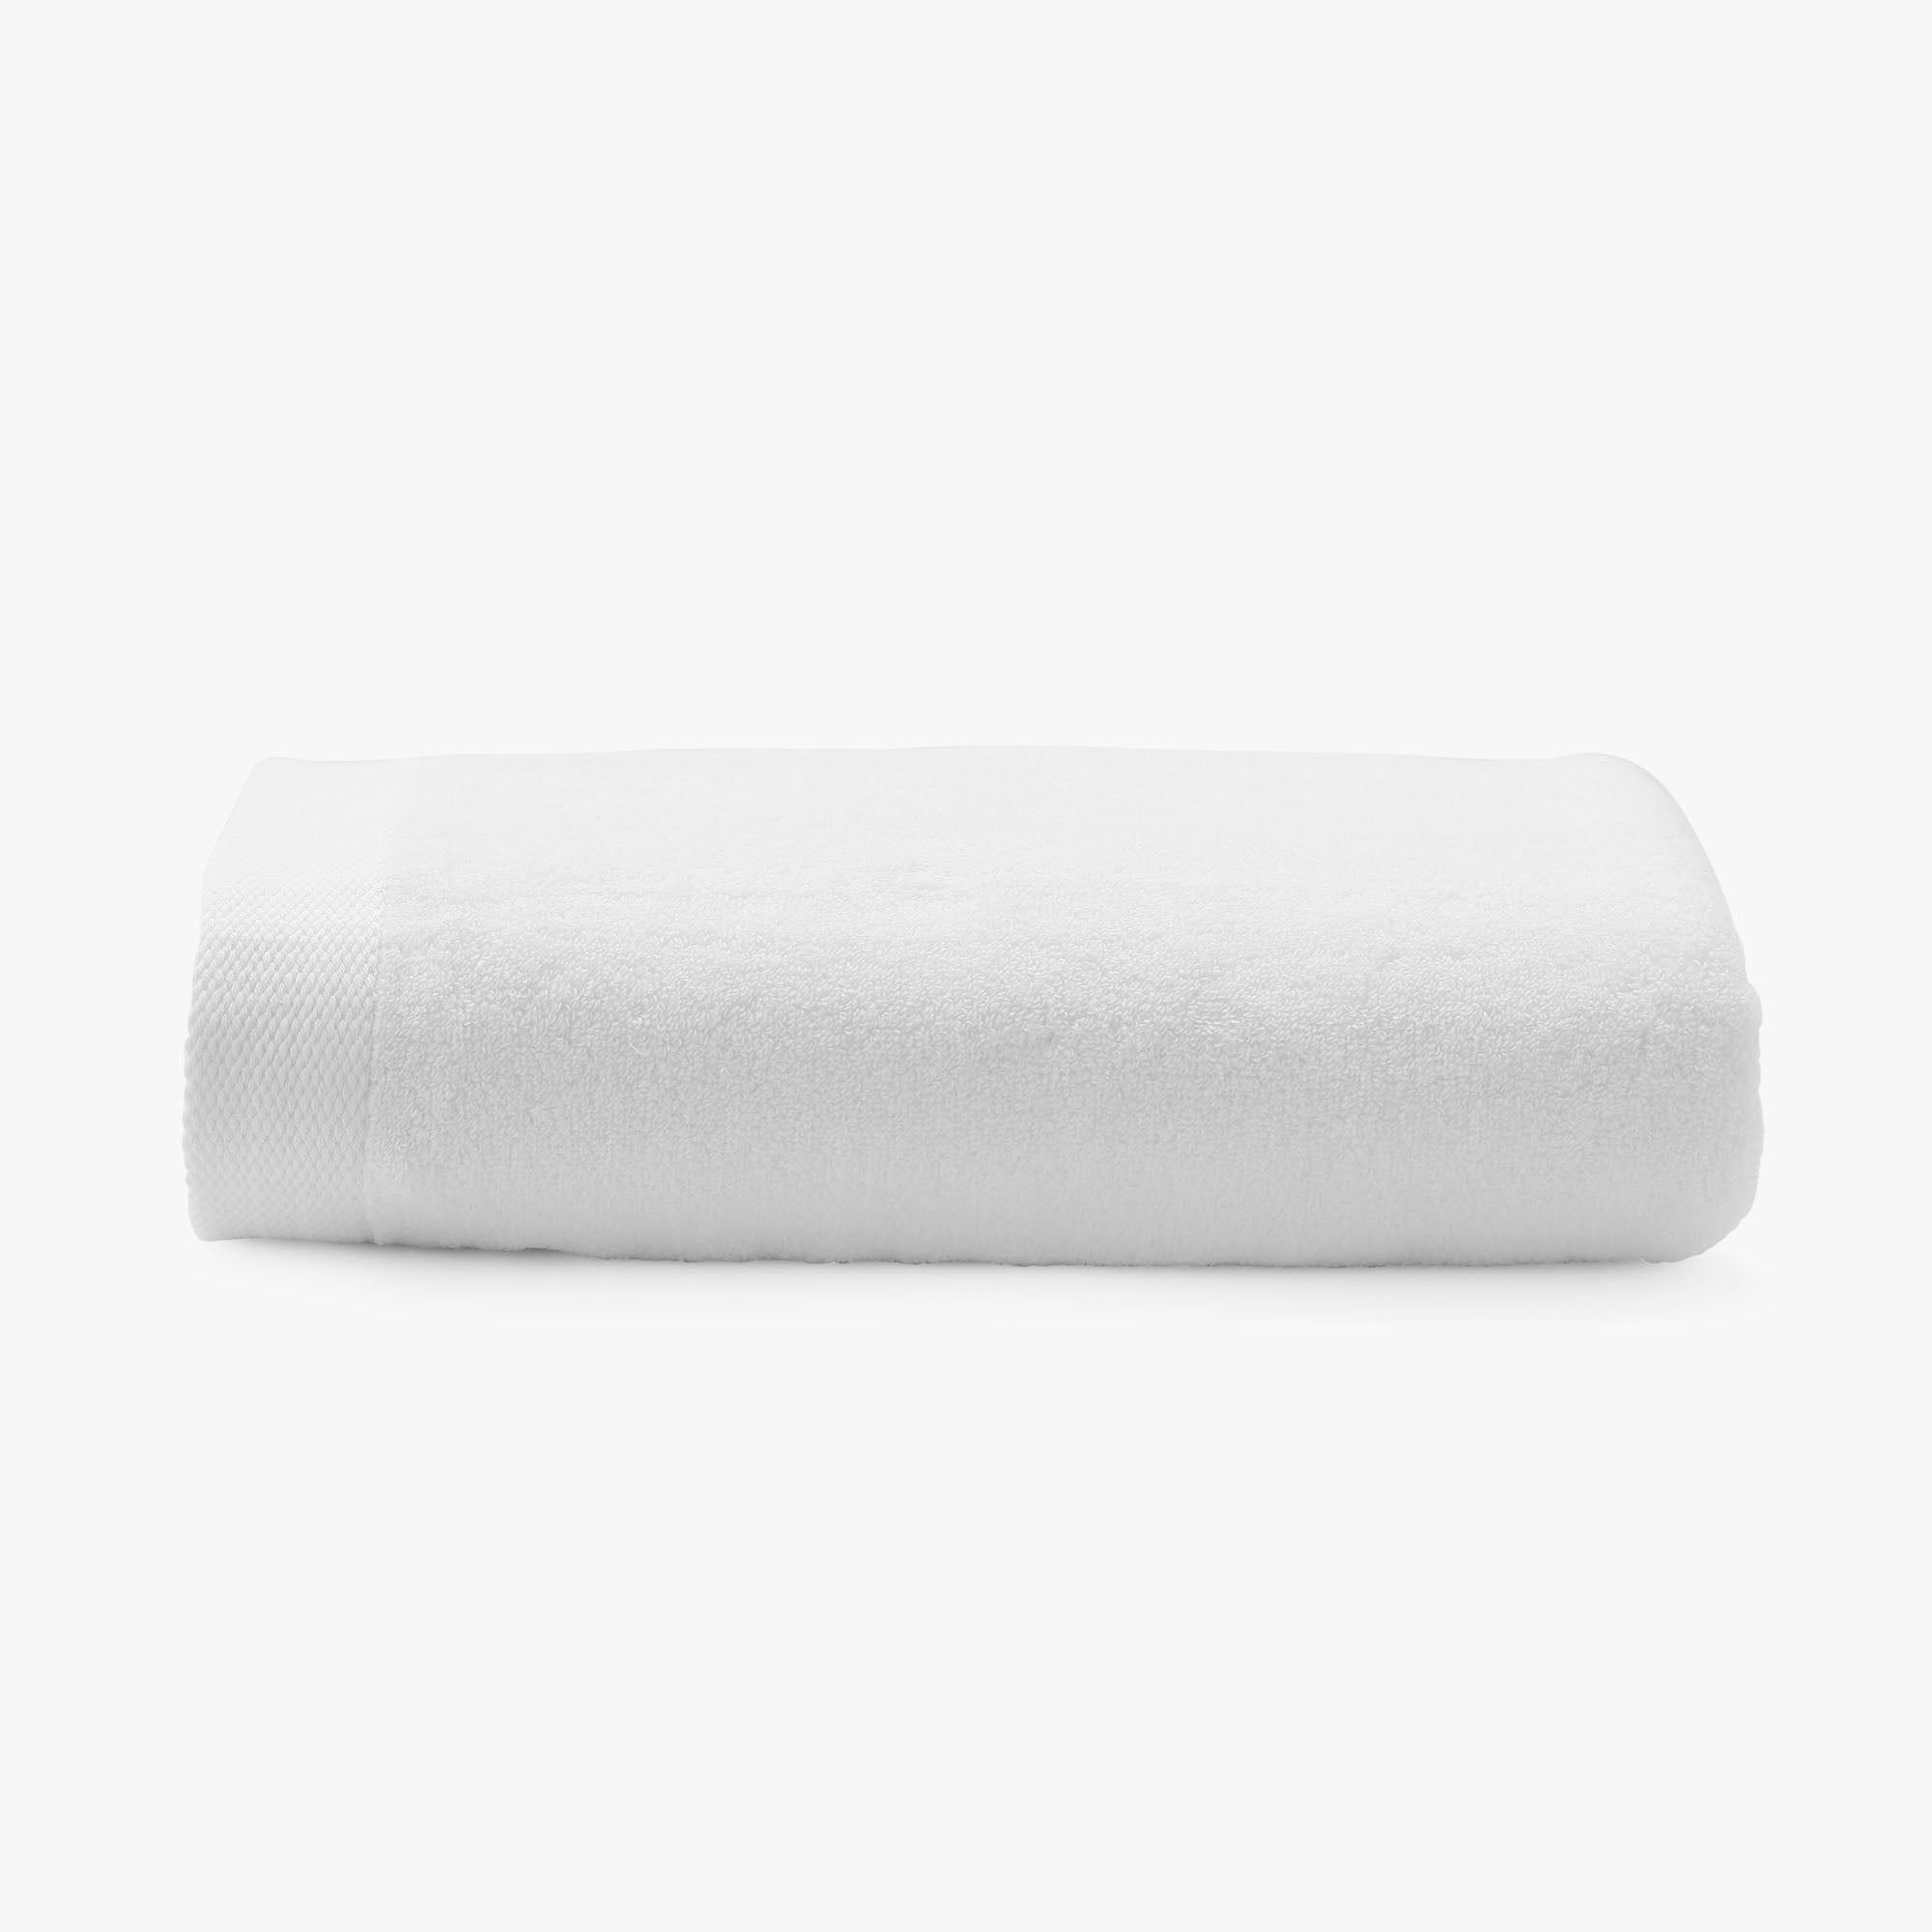 Bath Mat – The Pillow Bar